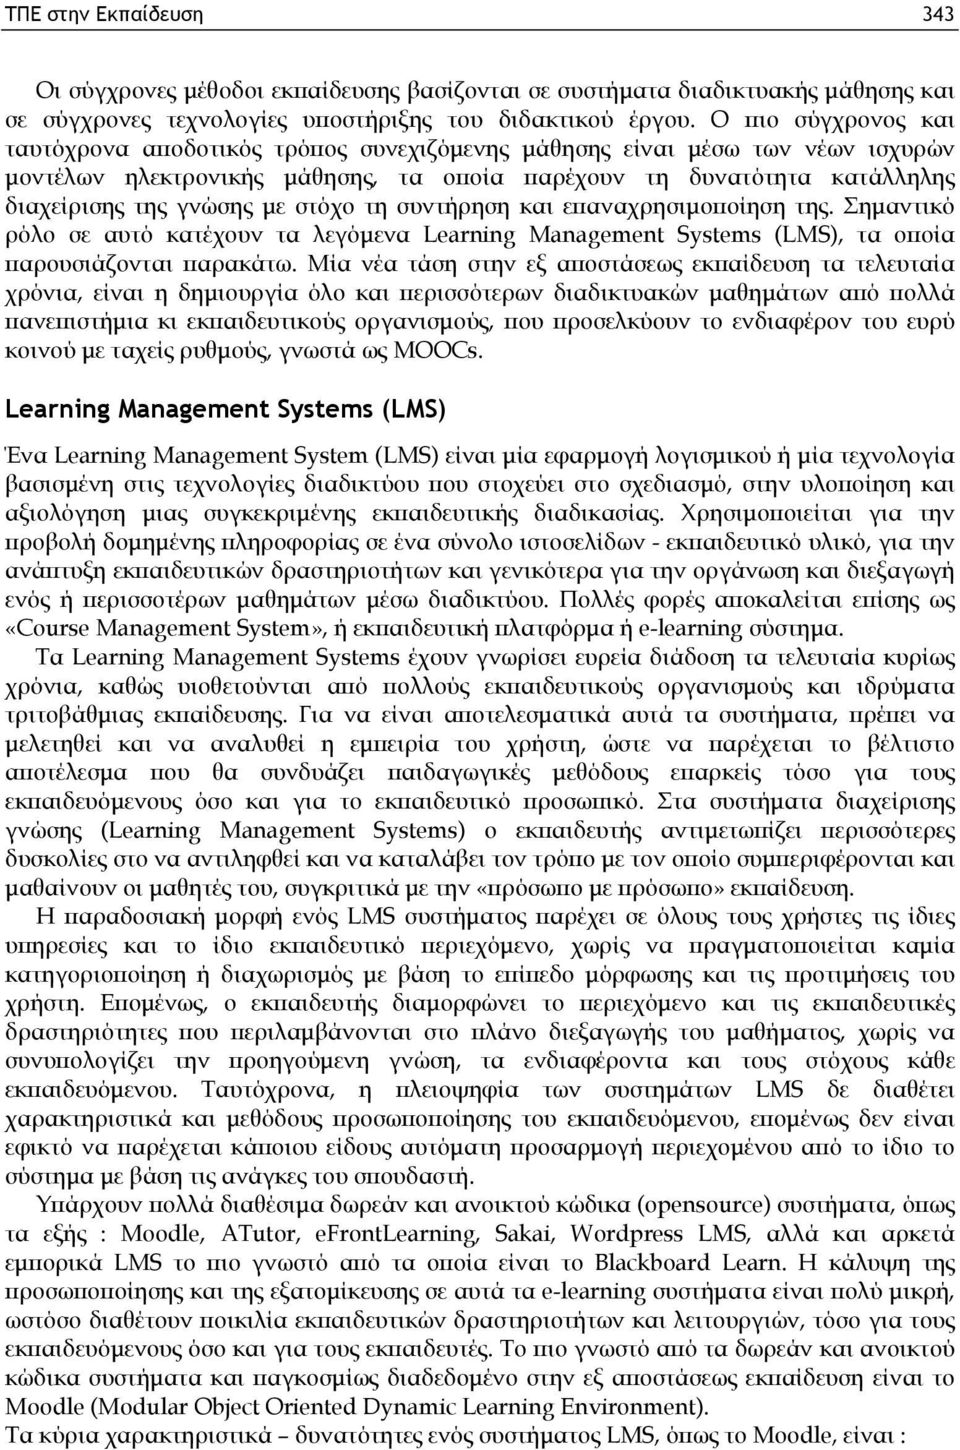 στόχο τη συντήρηση και επαναχρησιμοποίηση της. Σημαντικό ρόλο σε αυτό κατέχουν τα λεγόμενα Learning Management Systems (LMS), τα οποία παρουσιάζονται παρακάτω.